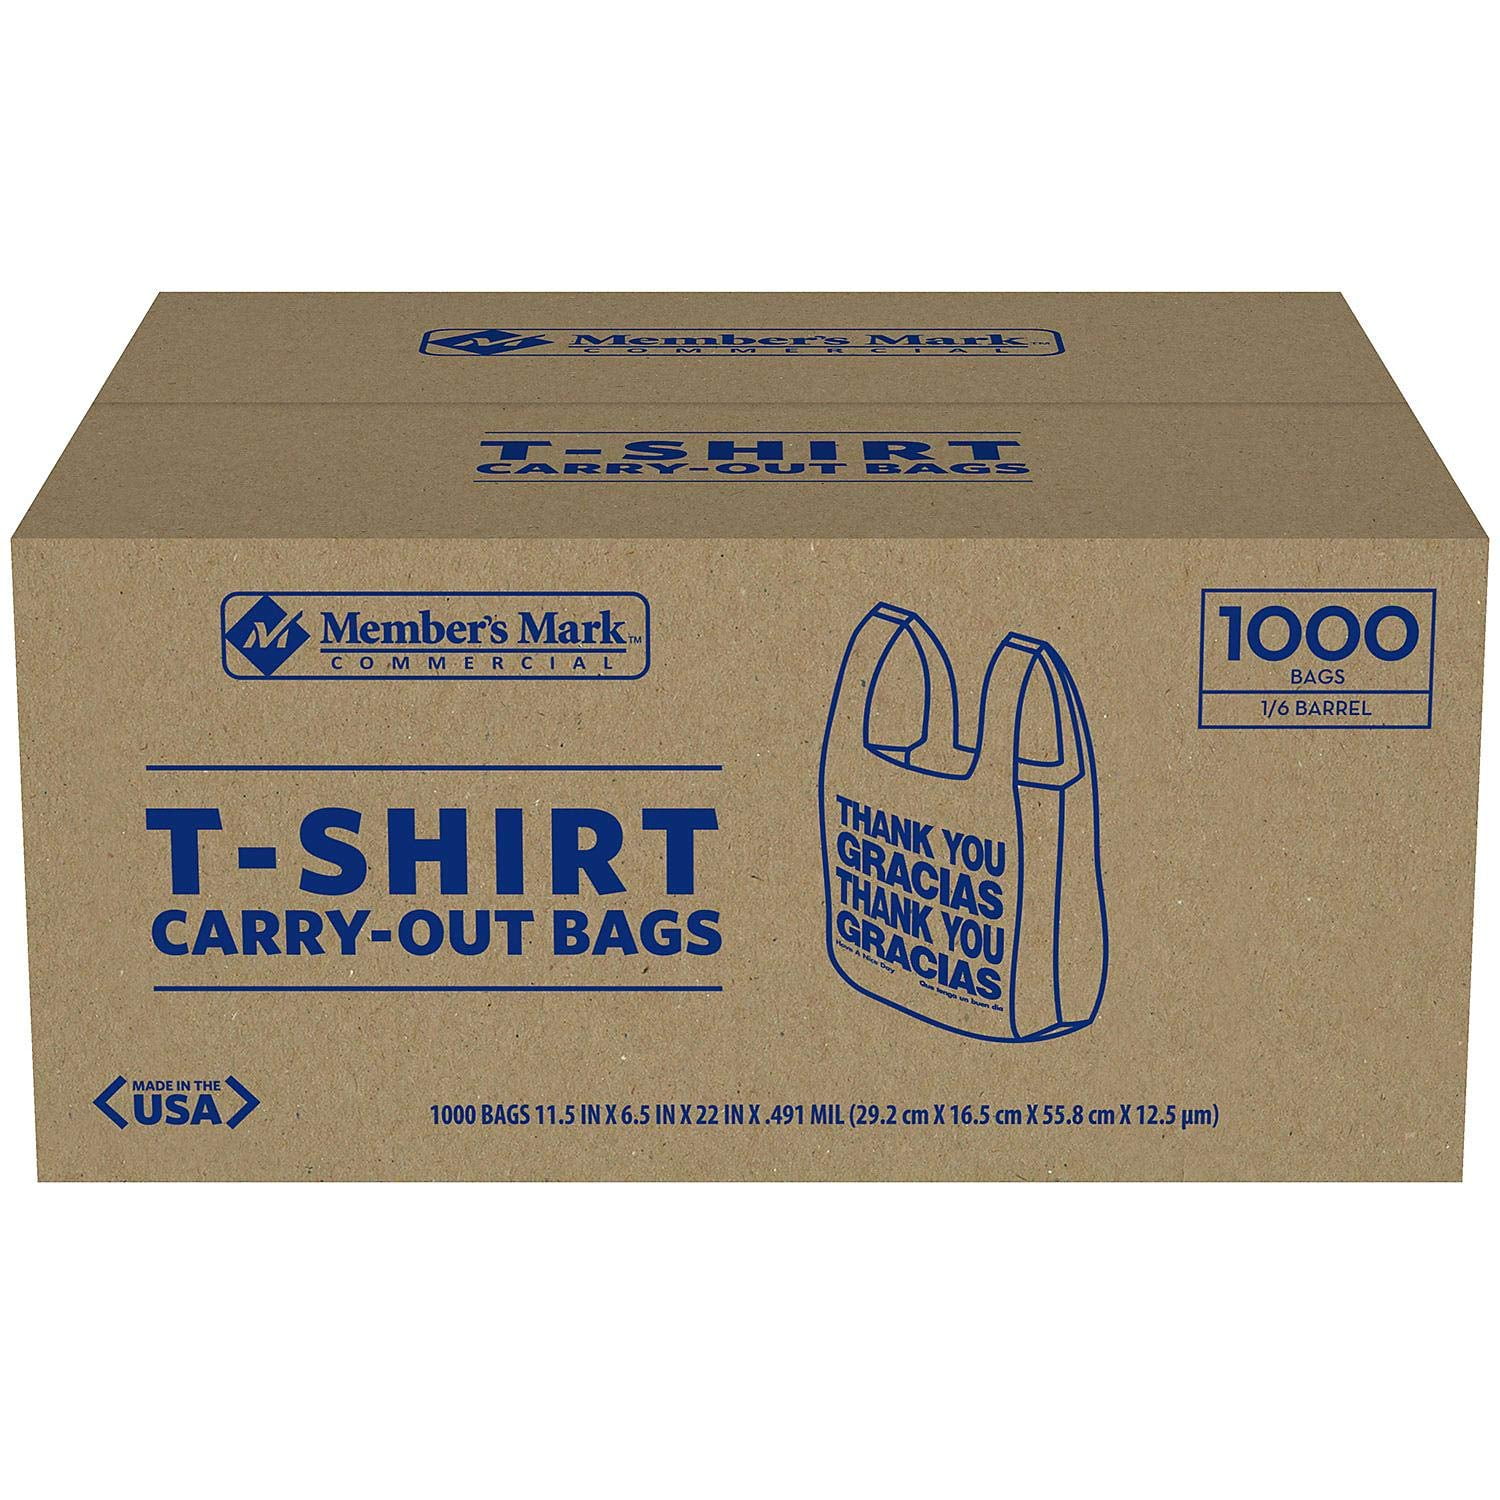 T-Shirt Carryout Bags- Thank You/Gracias - 1000 ct. - Walmart.com